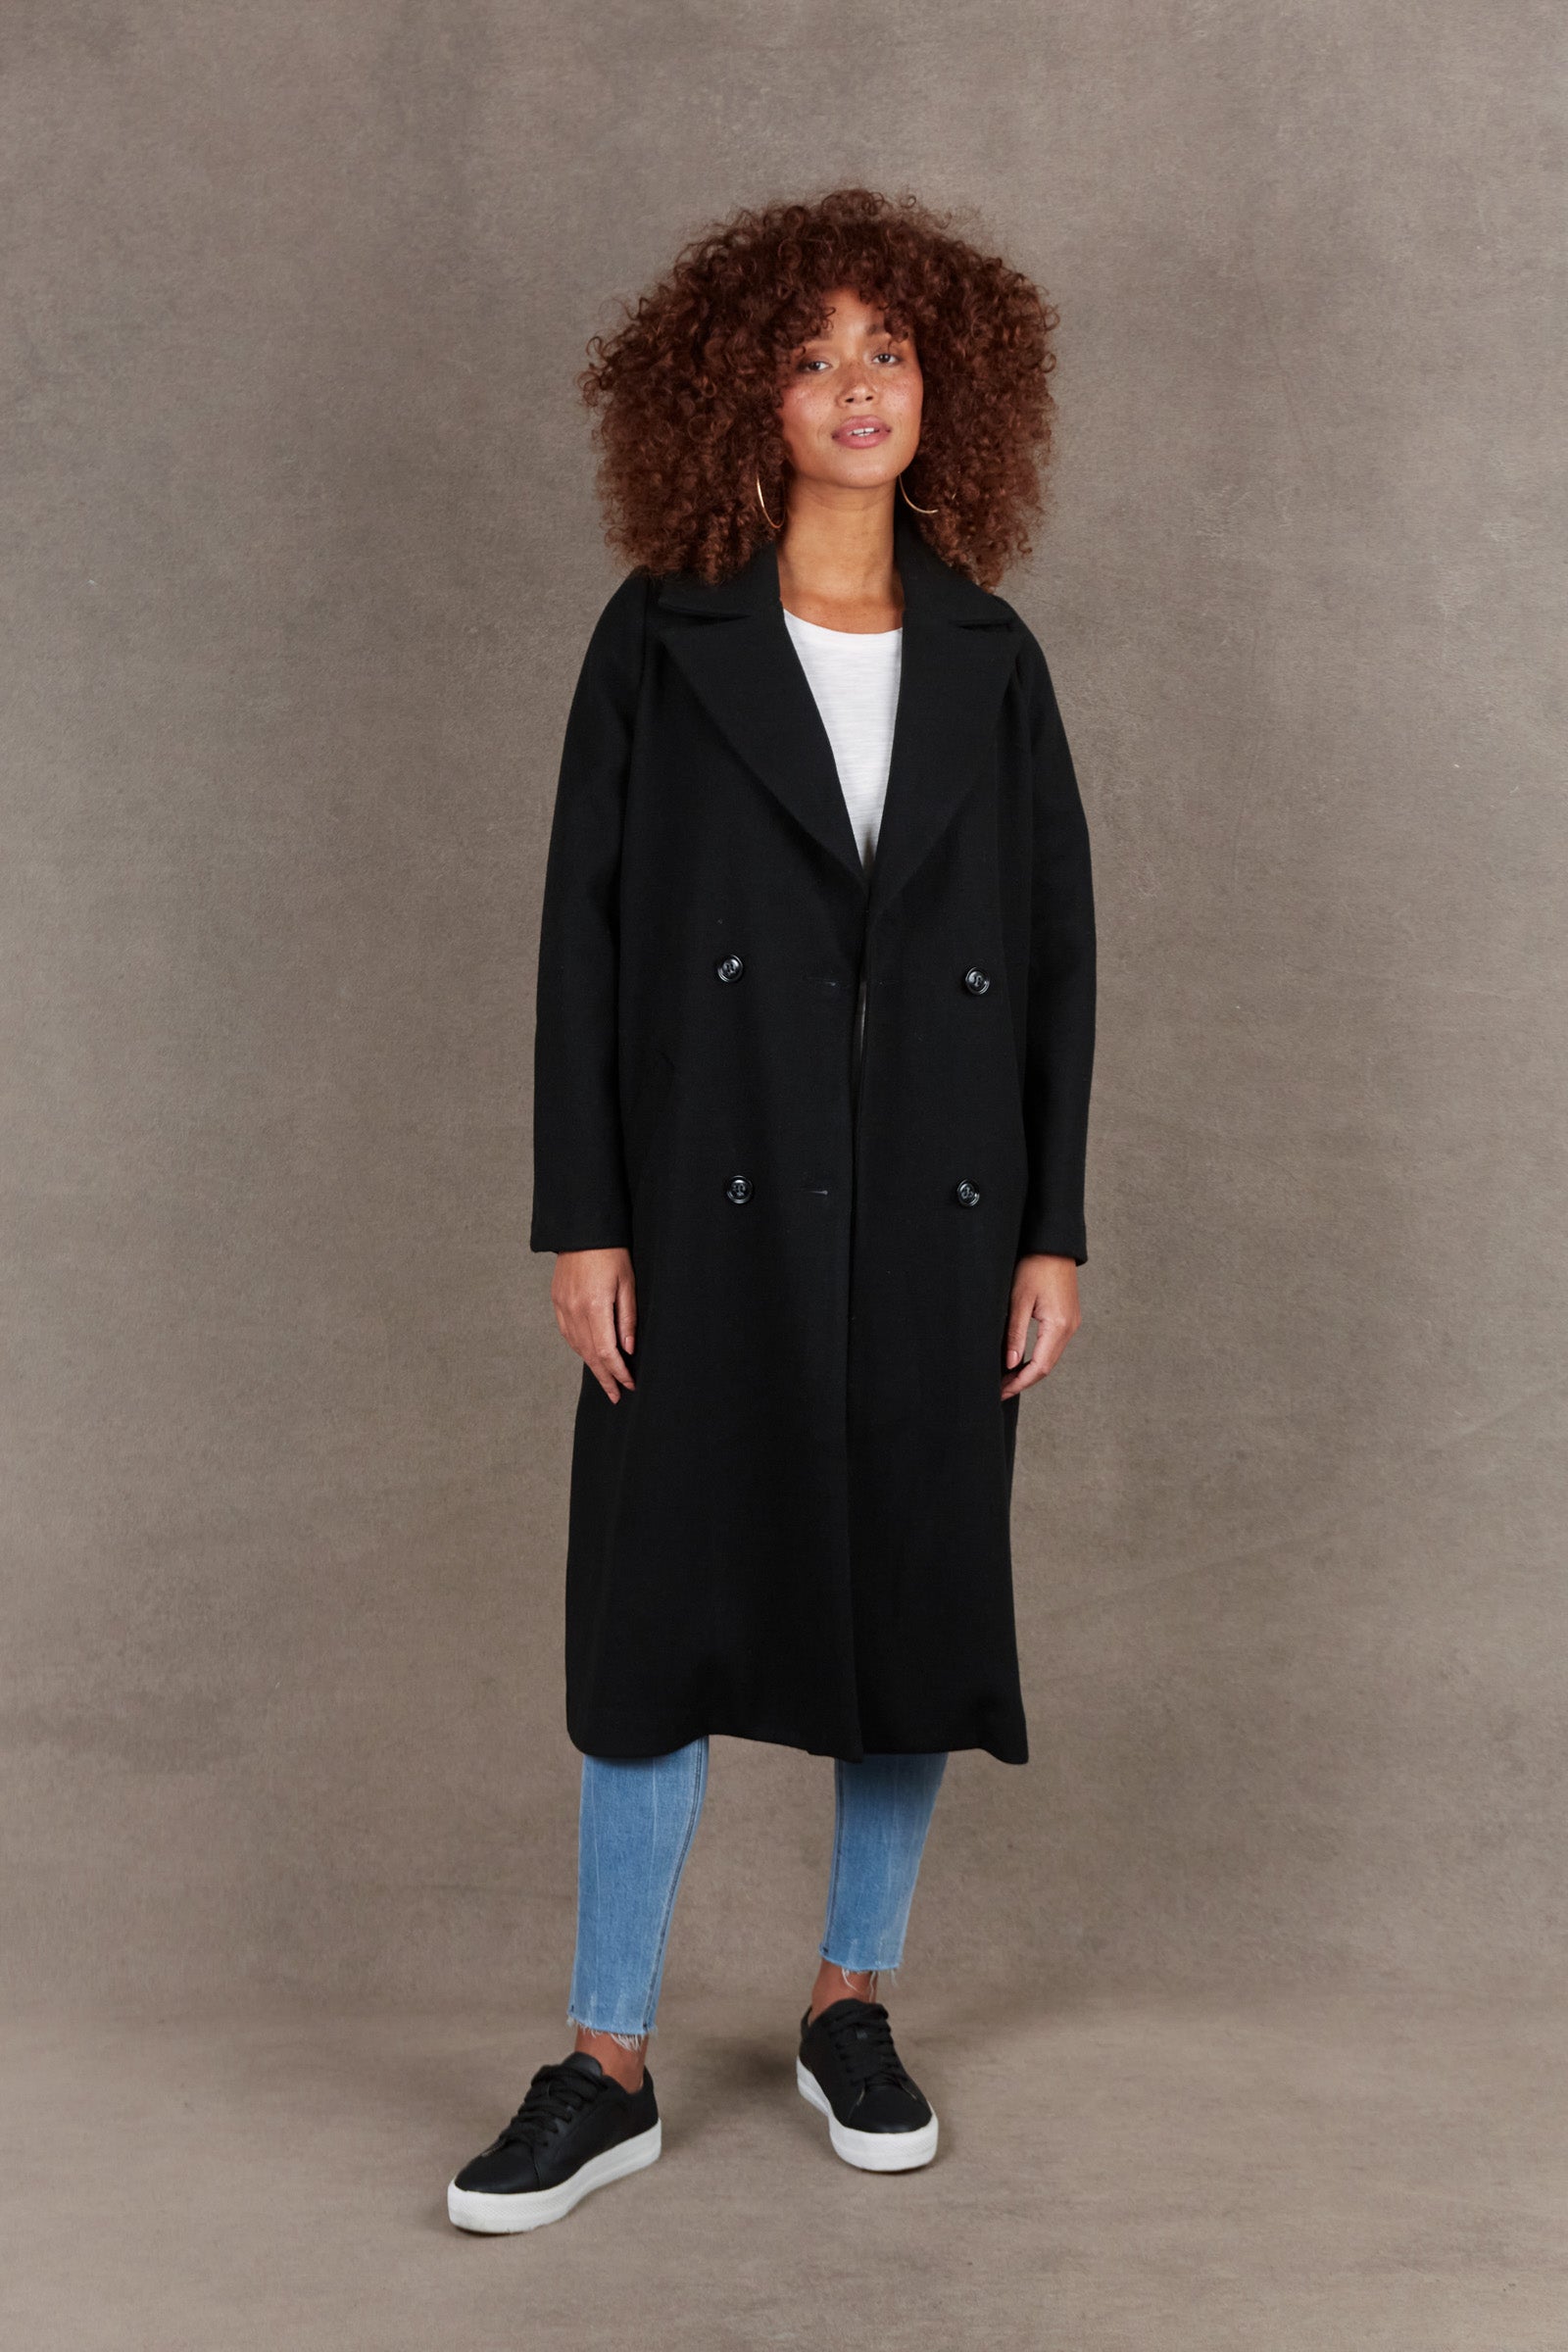 Mohave Coat - Ebony - eb&ive Clothing - Jacket